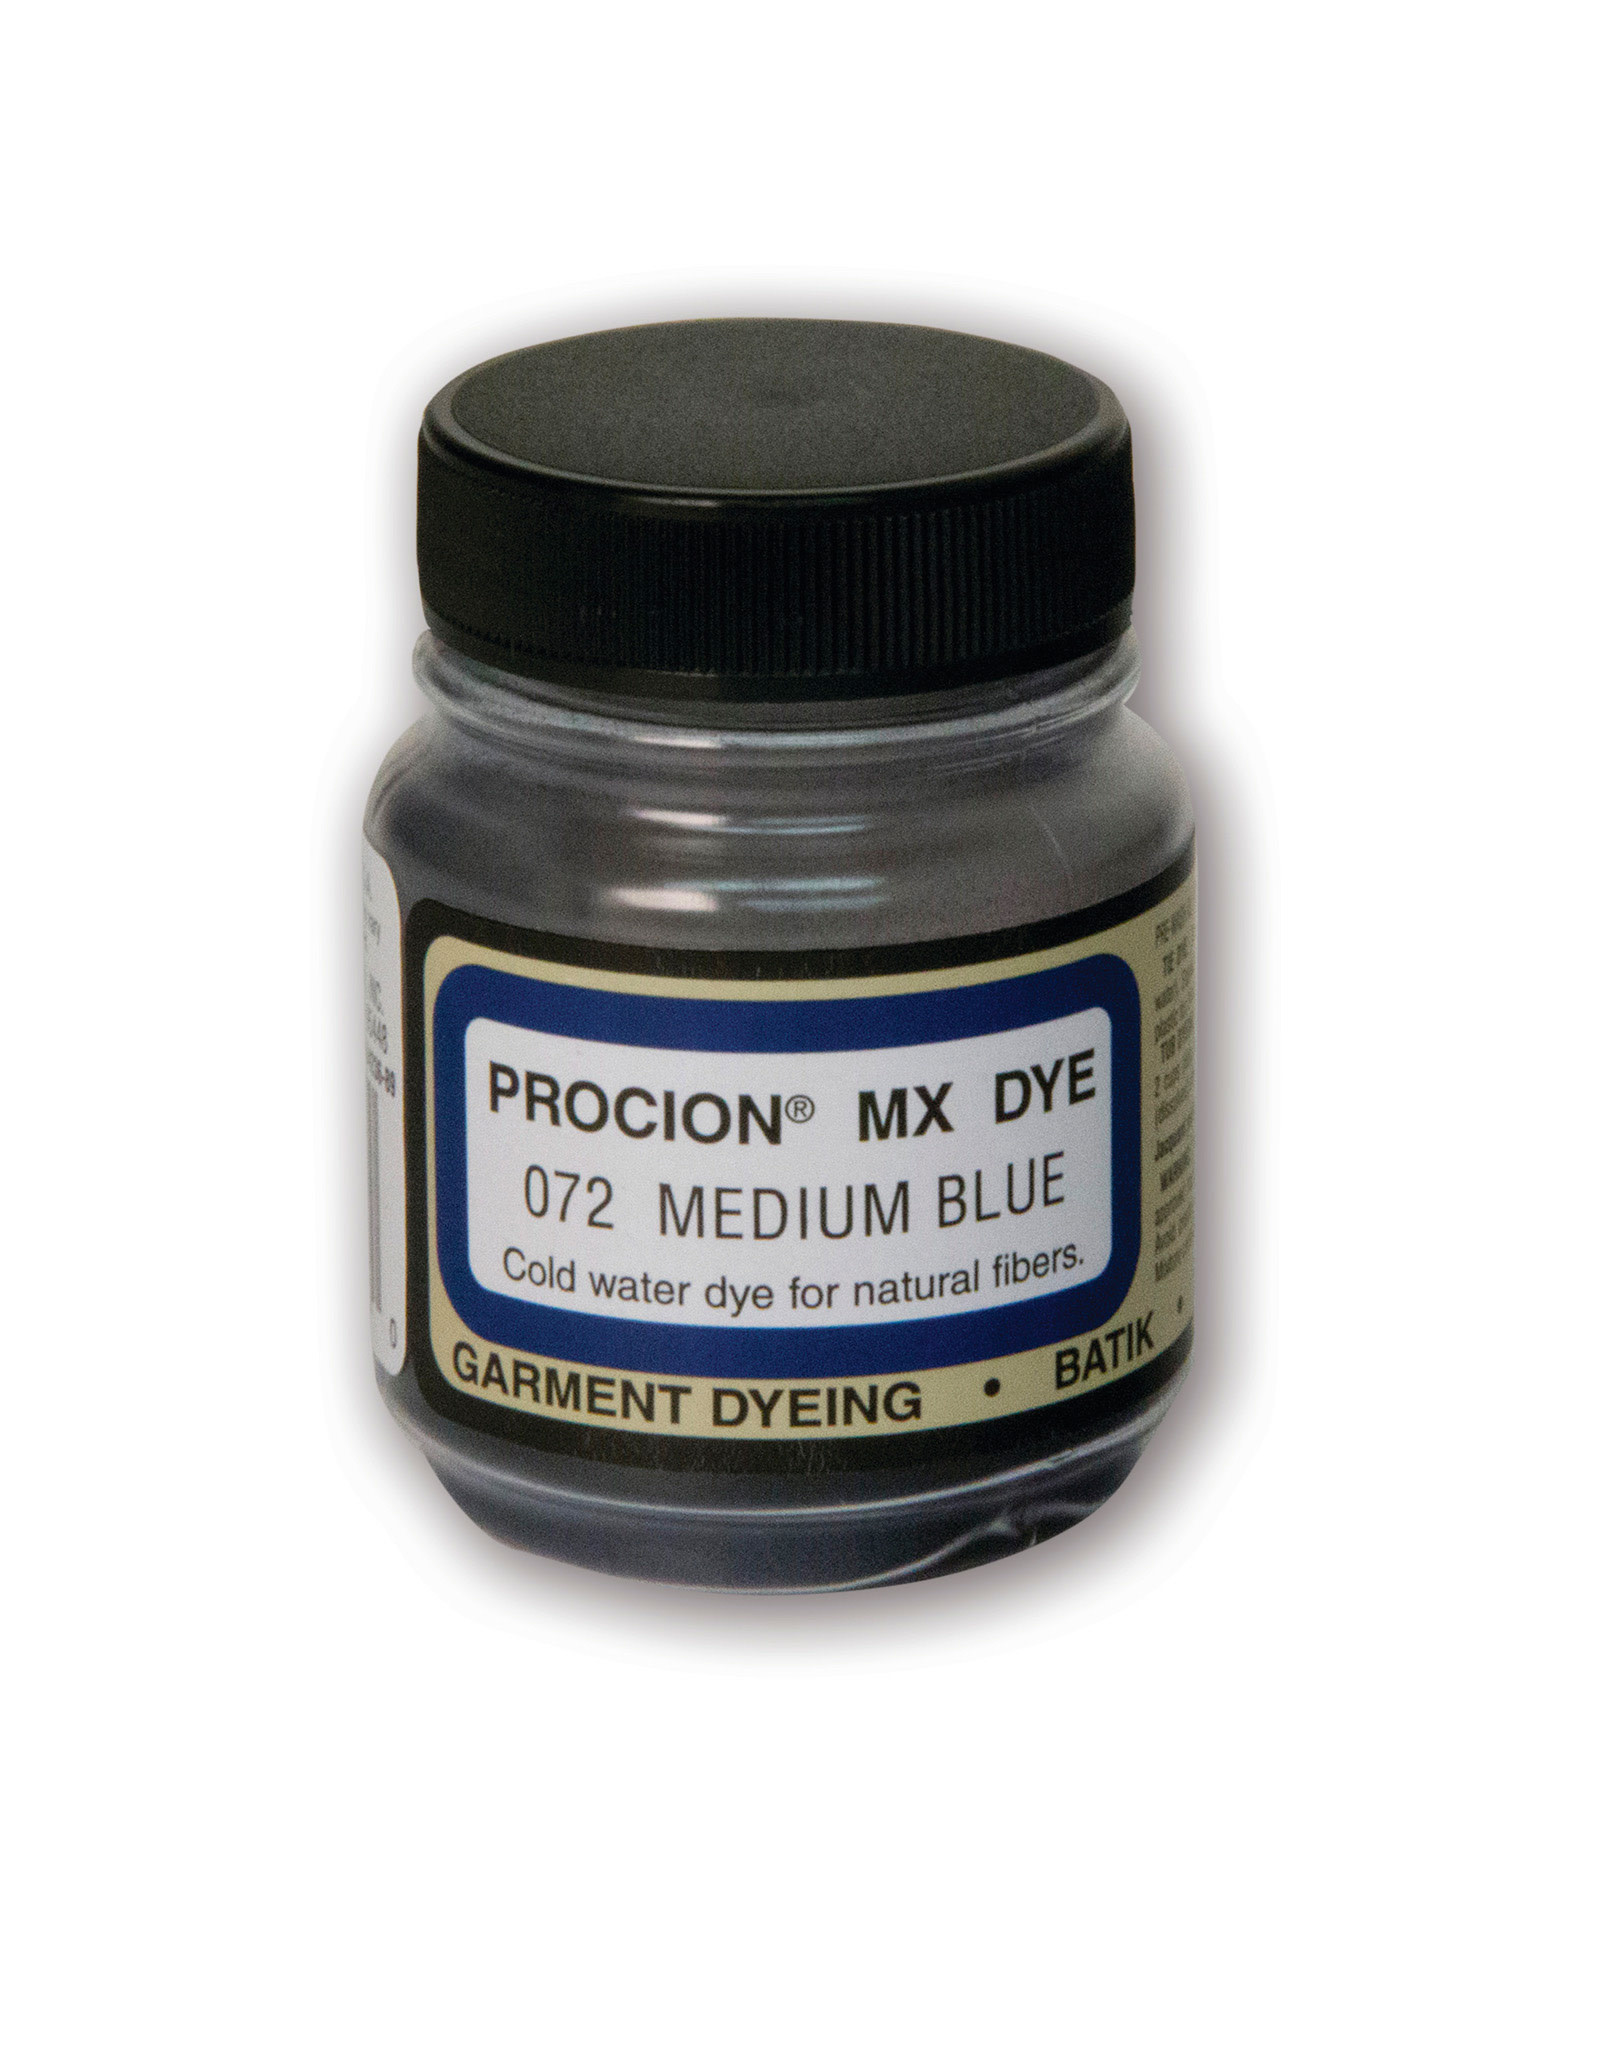 Jacquard Jacquard Procion Mx Dye, Medium Blue 2/3oz